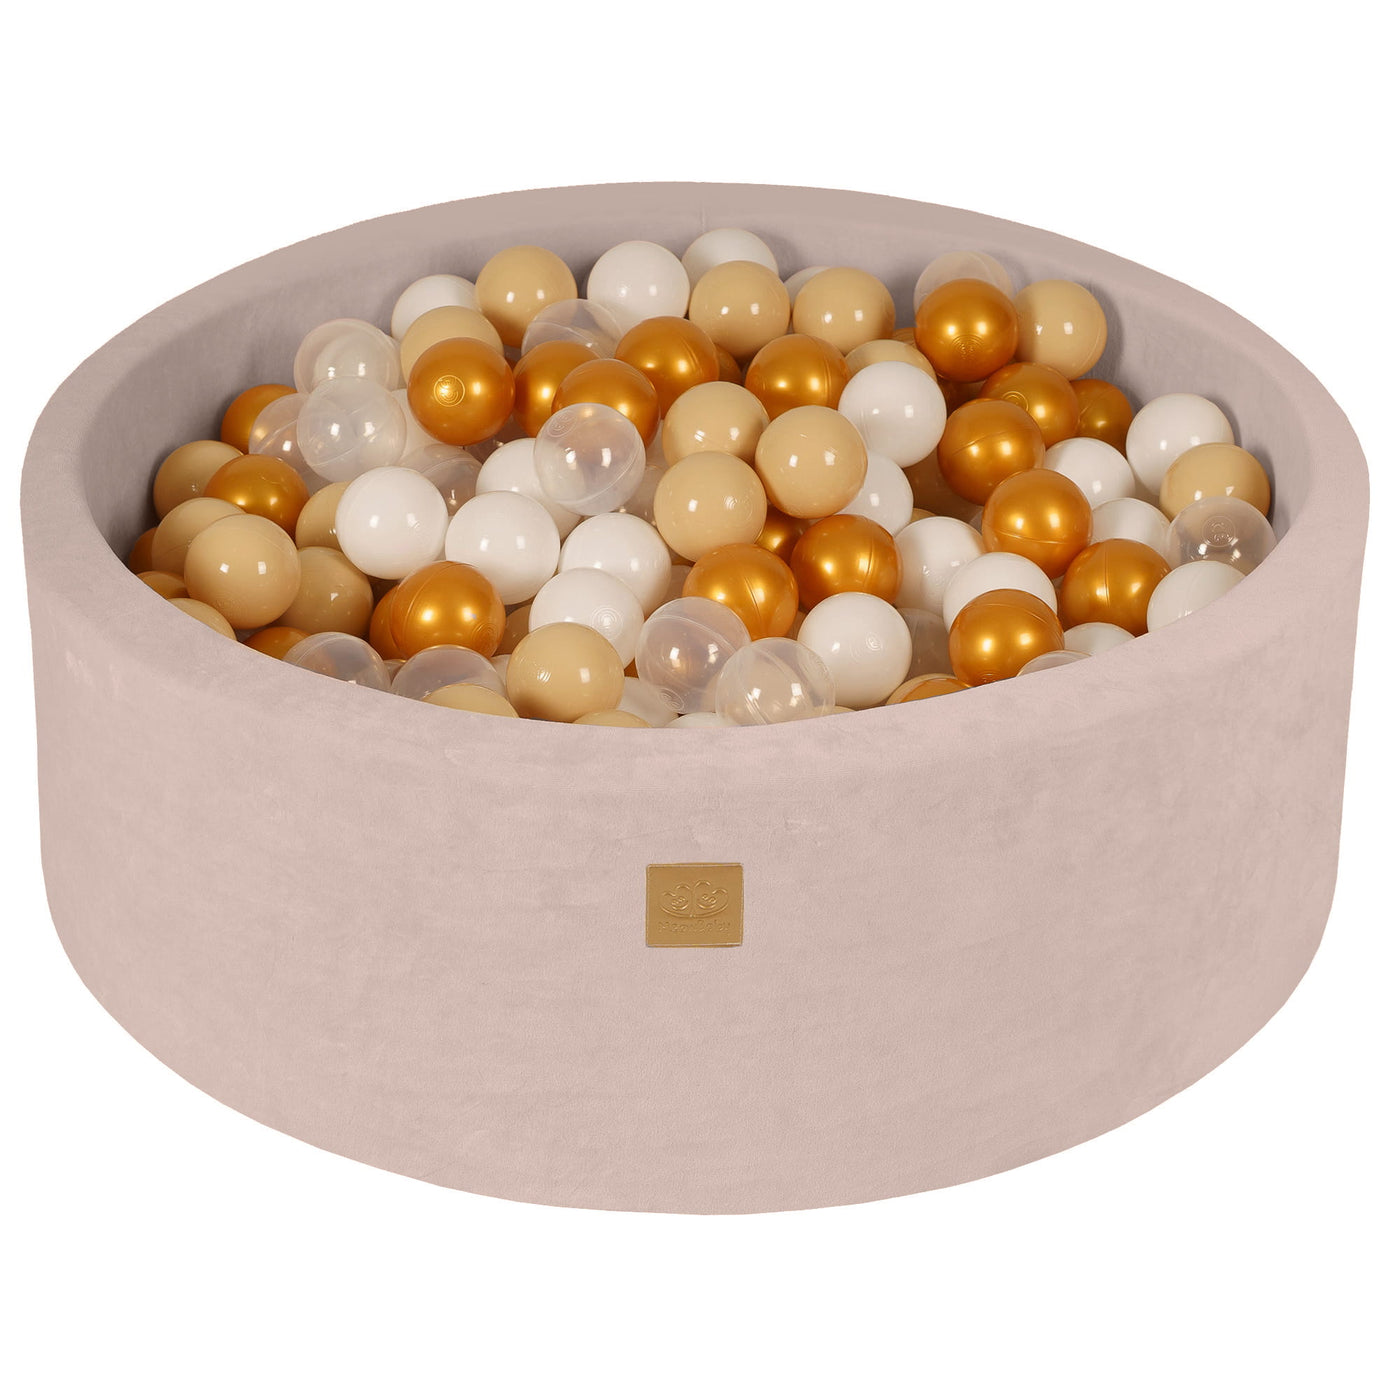 Velvet Ecru Ball Pit - Gold, Beige, White & Clear Balls